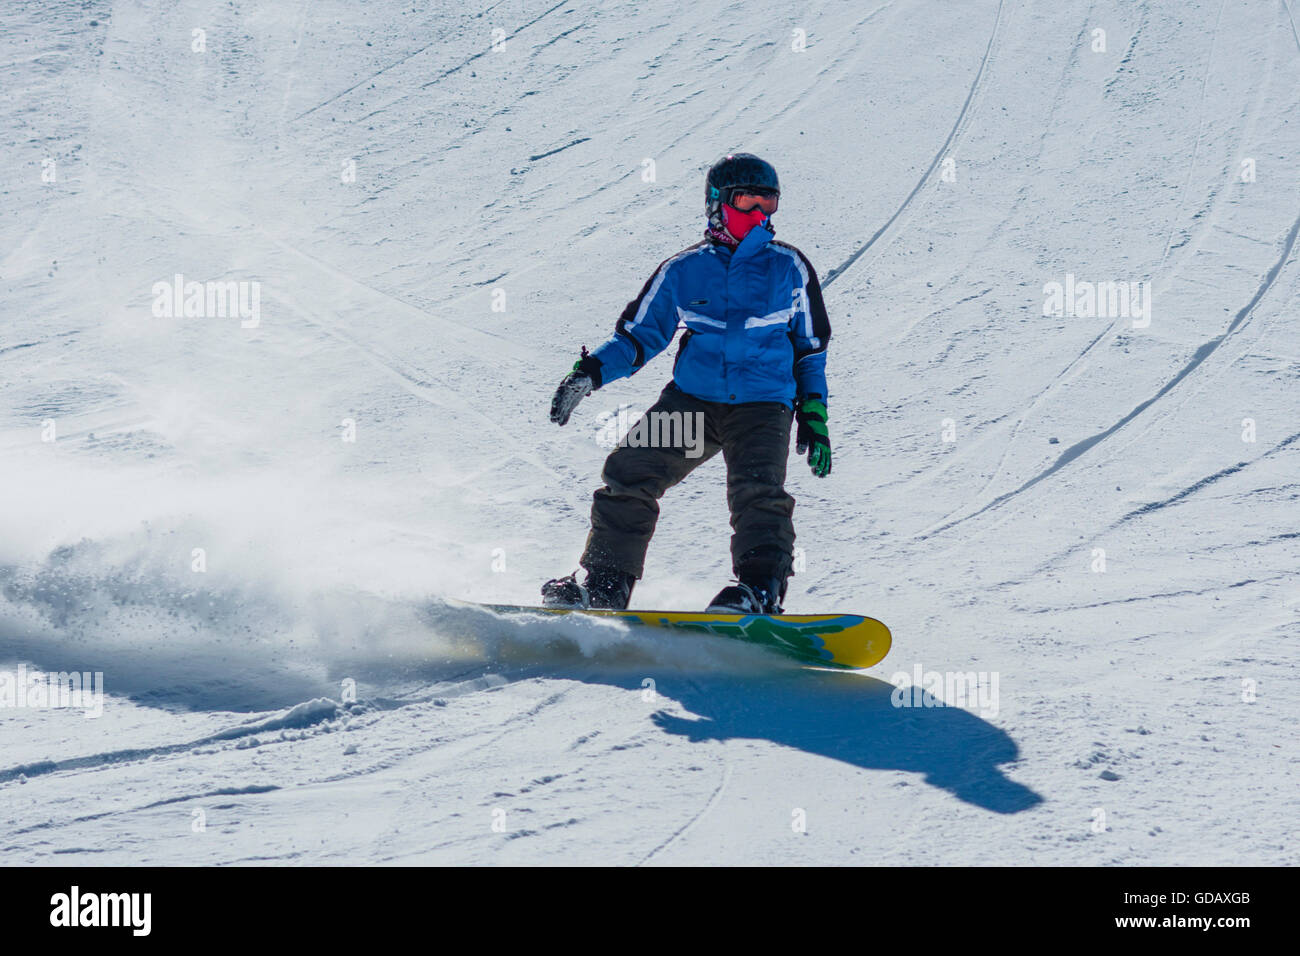 Snow boarder,14 ans,montagne,Tegel près de Füssen,Alpes d'Allgäu, Bavière Allgäu,Allemagne,l'Europe Banque D'Images